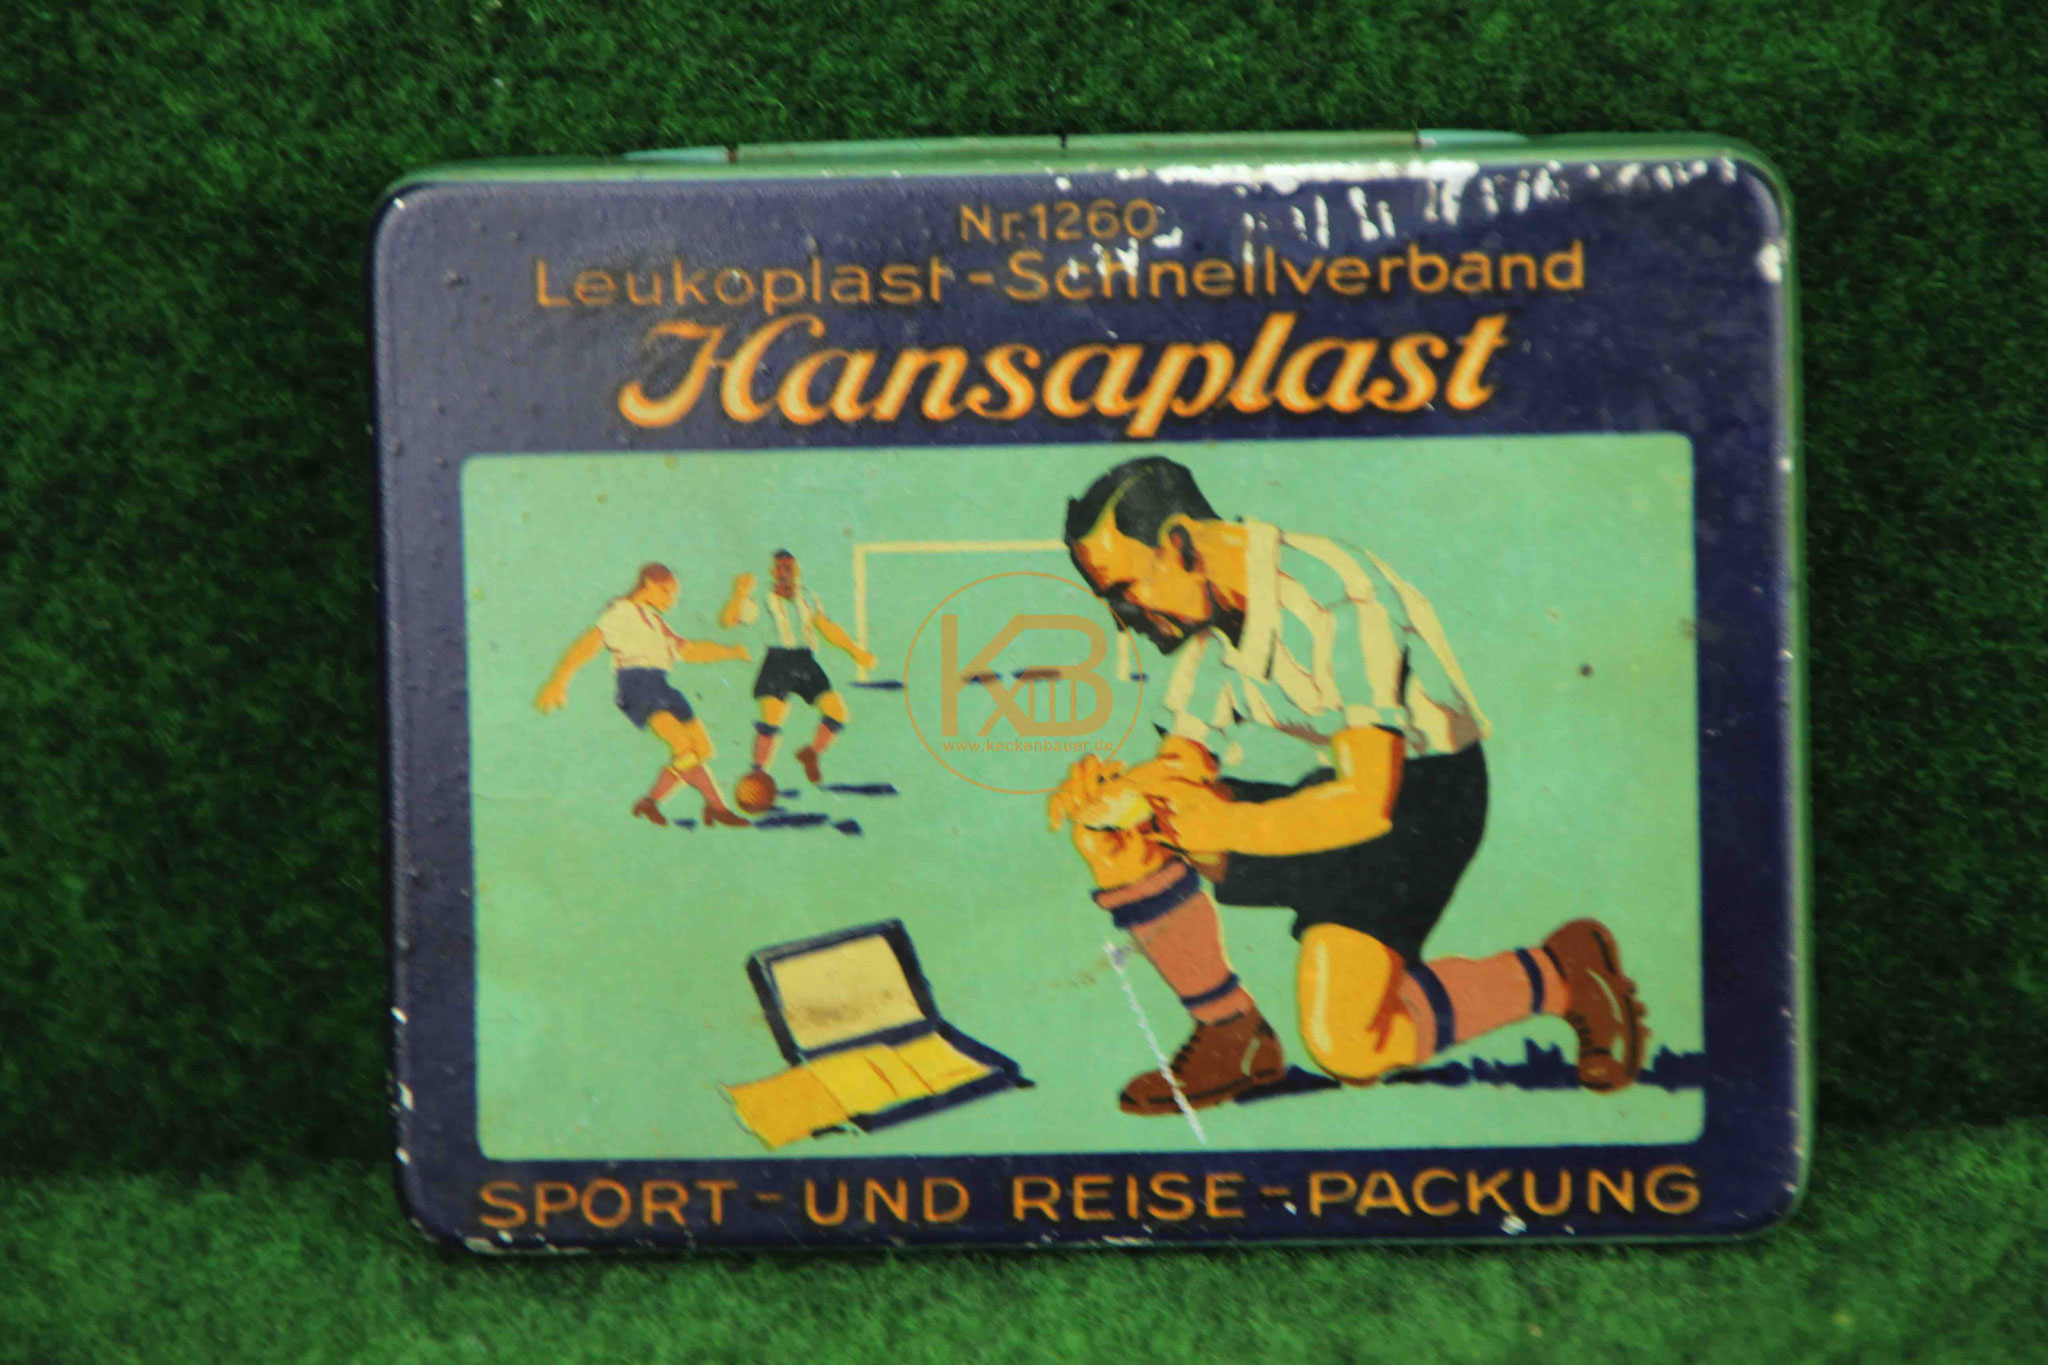 alte Hansaplast Blech Dose Fussball Spieler Werbung Reklame Nr. 1260 vermutlich aus den 1950er Jahren